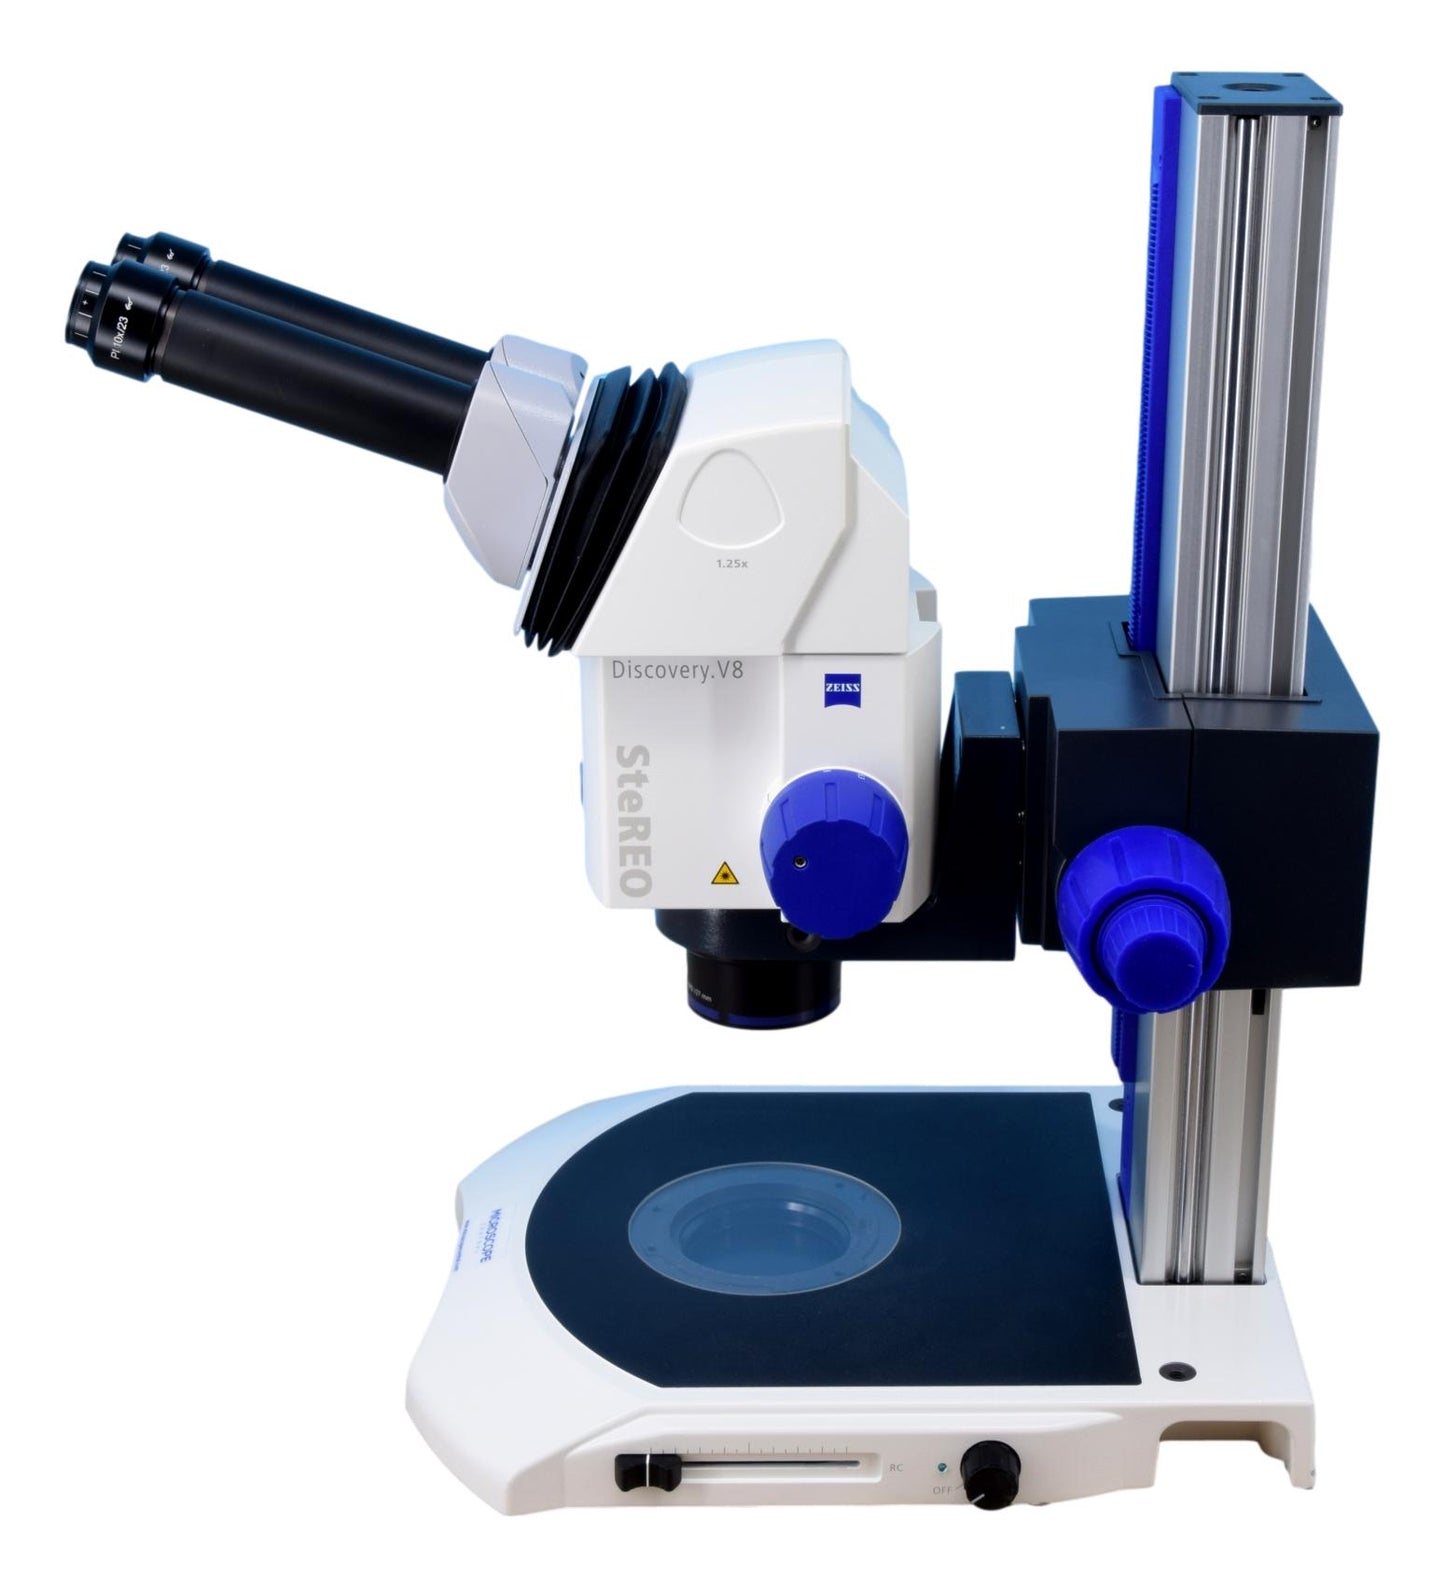 Discovery V8 Stereo Microscope